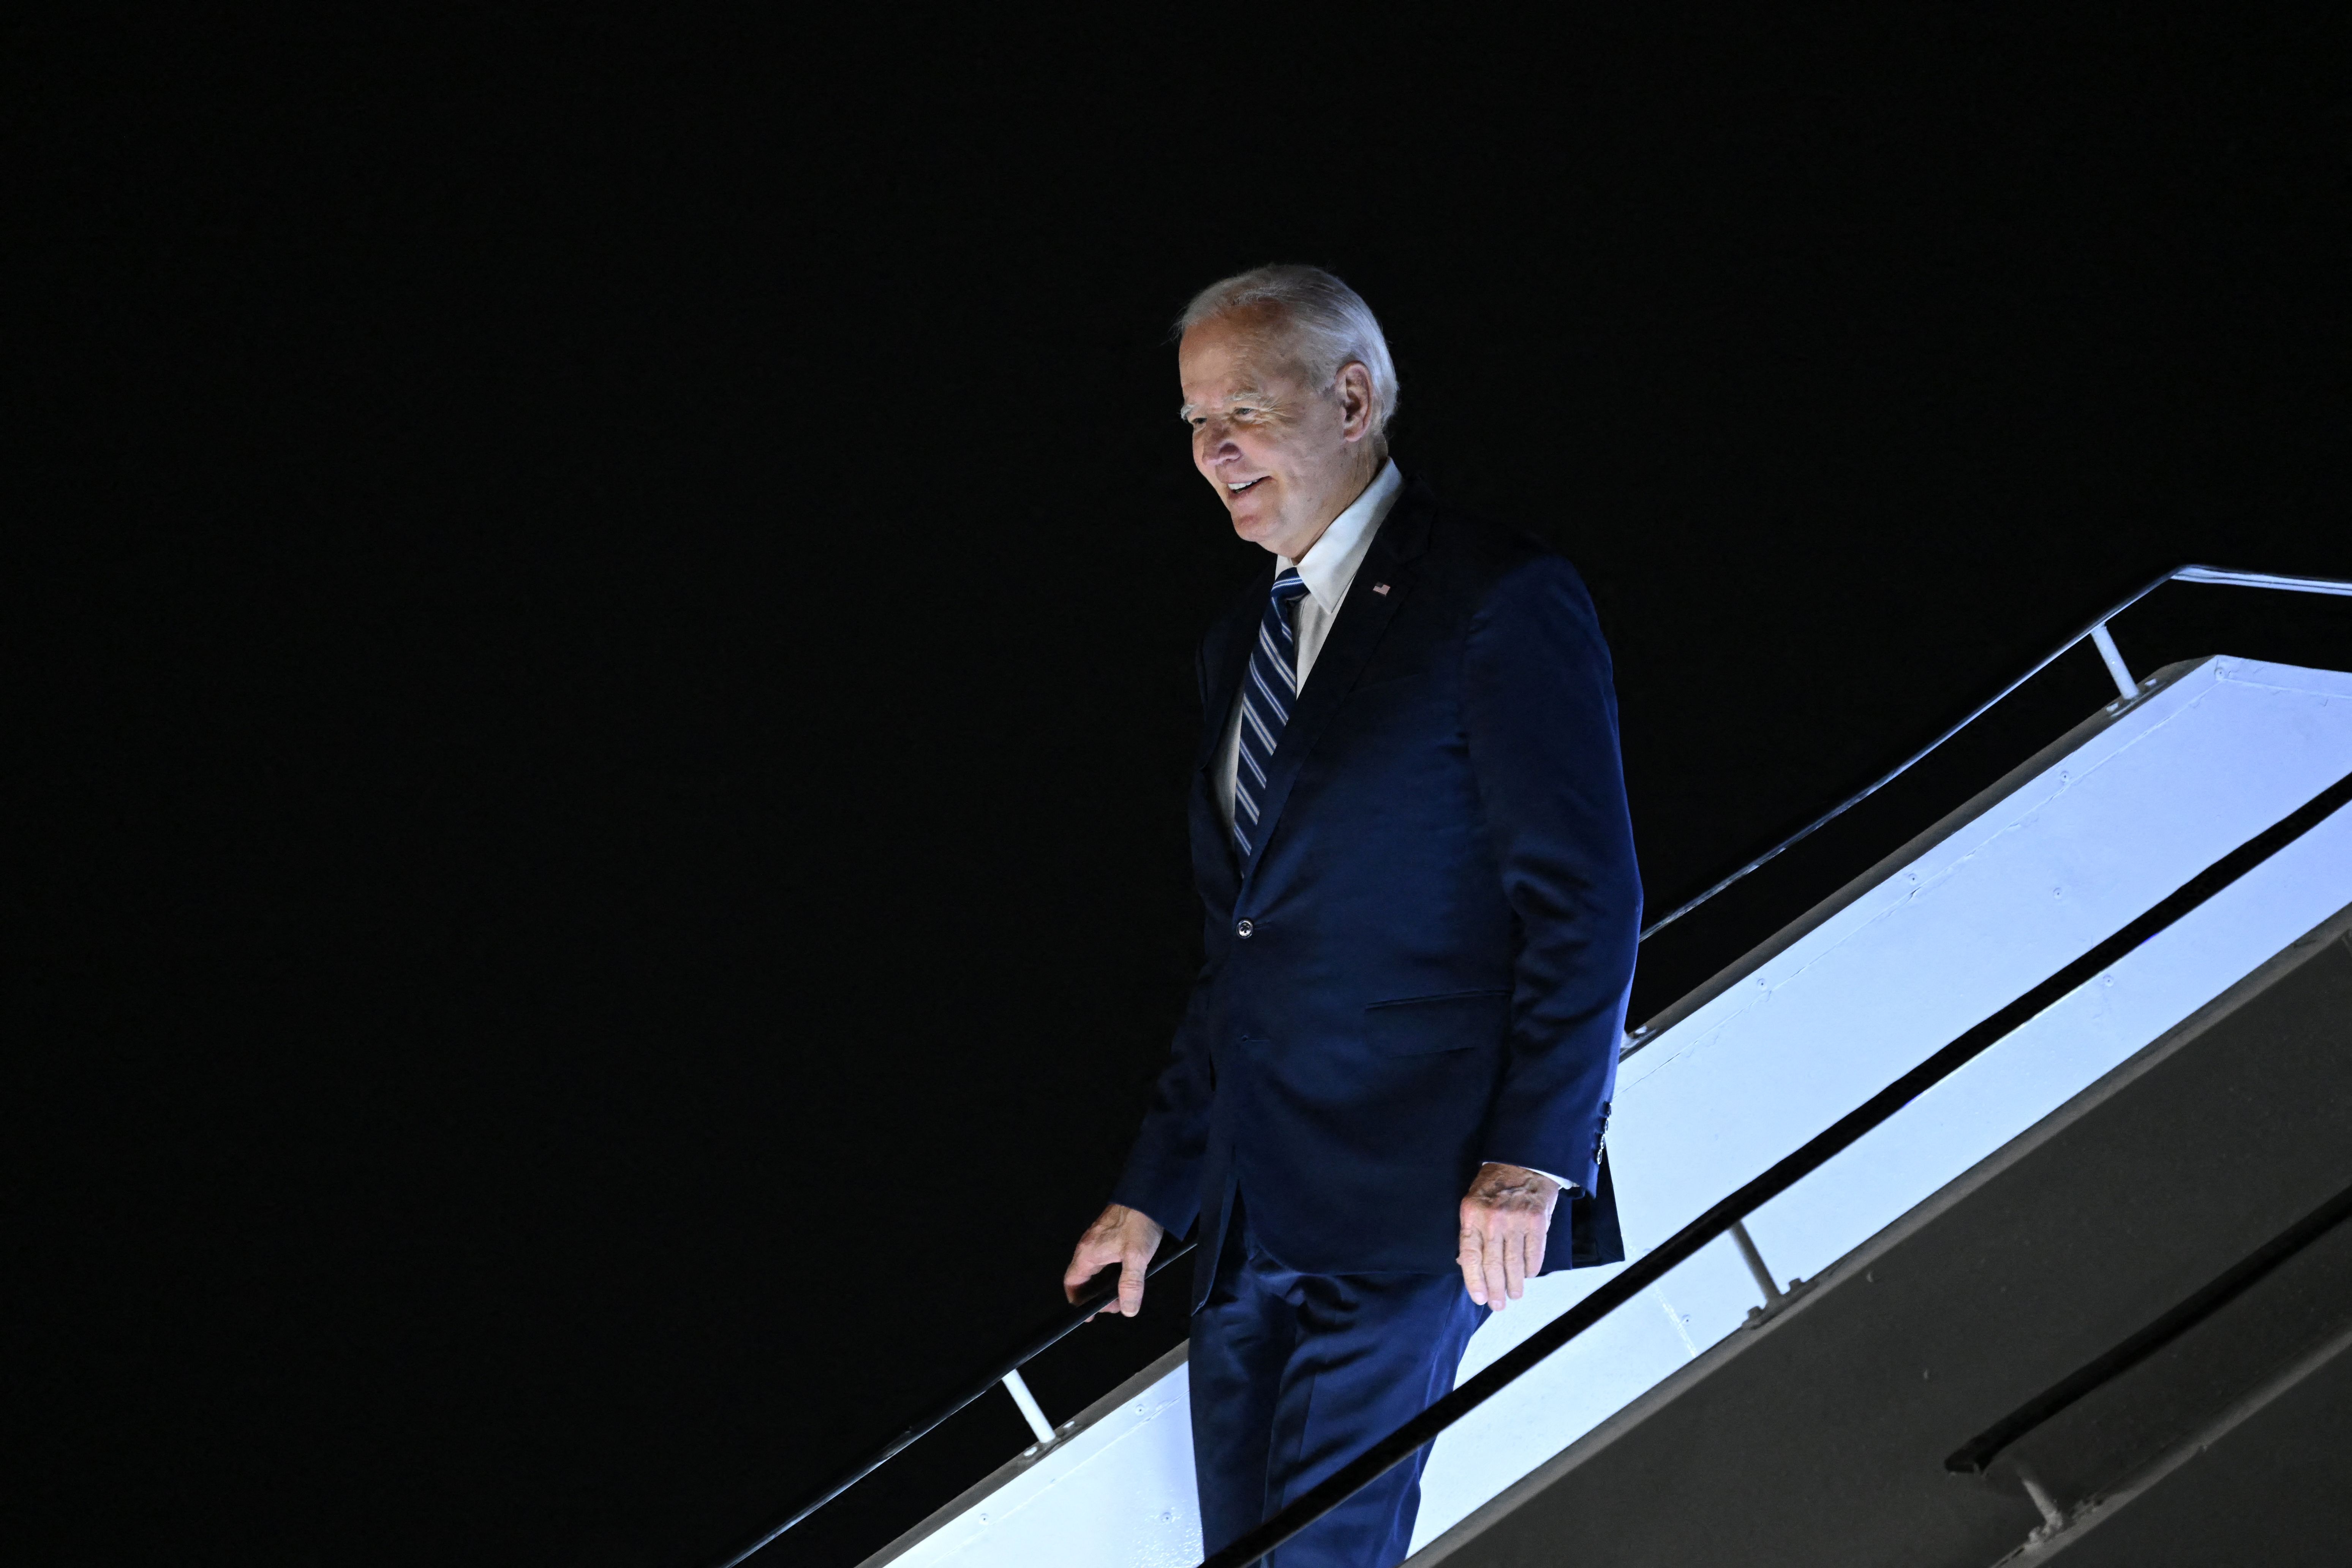 Joe Biden walking down airplane steps at night.